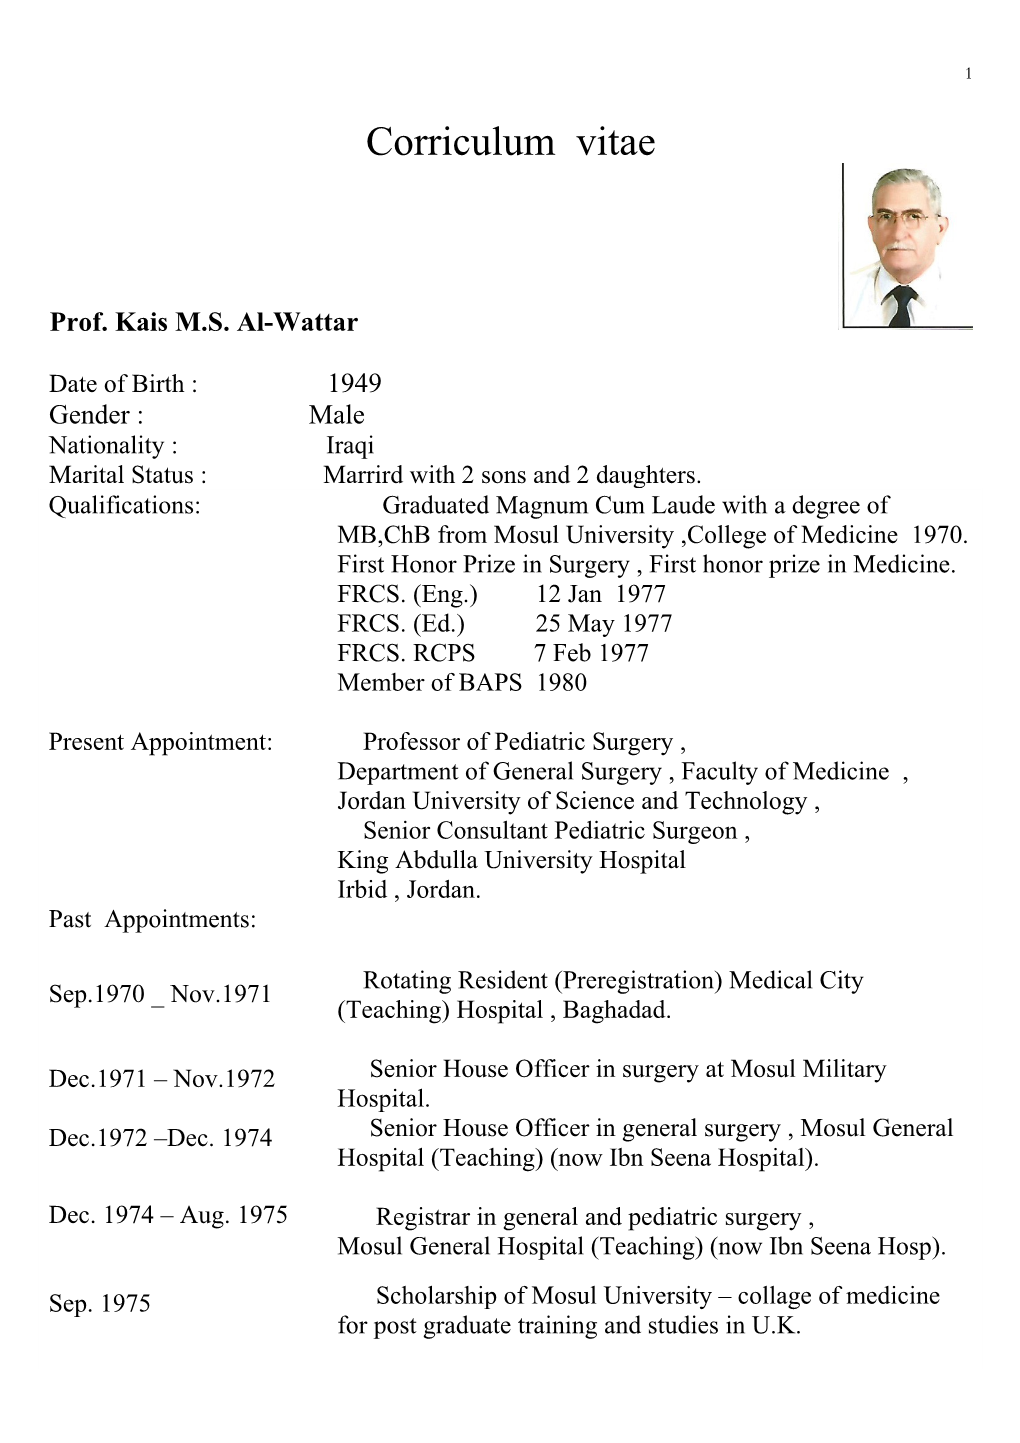 C.V. of Dr. Kais Al-Wattar